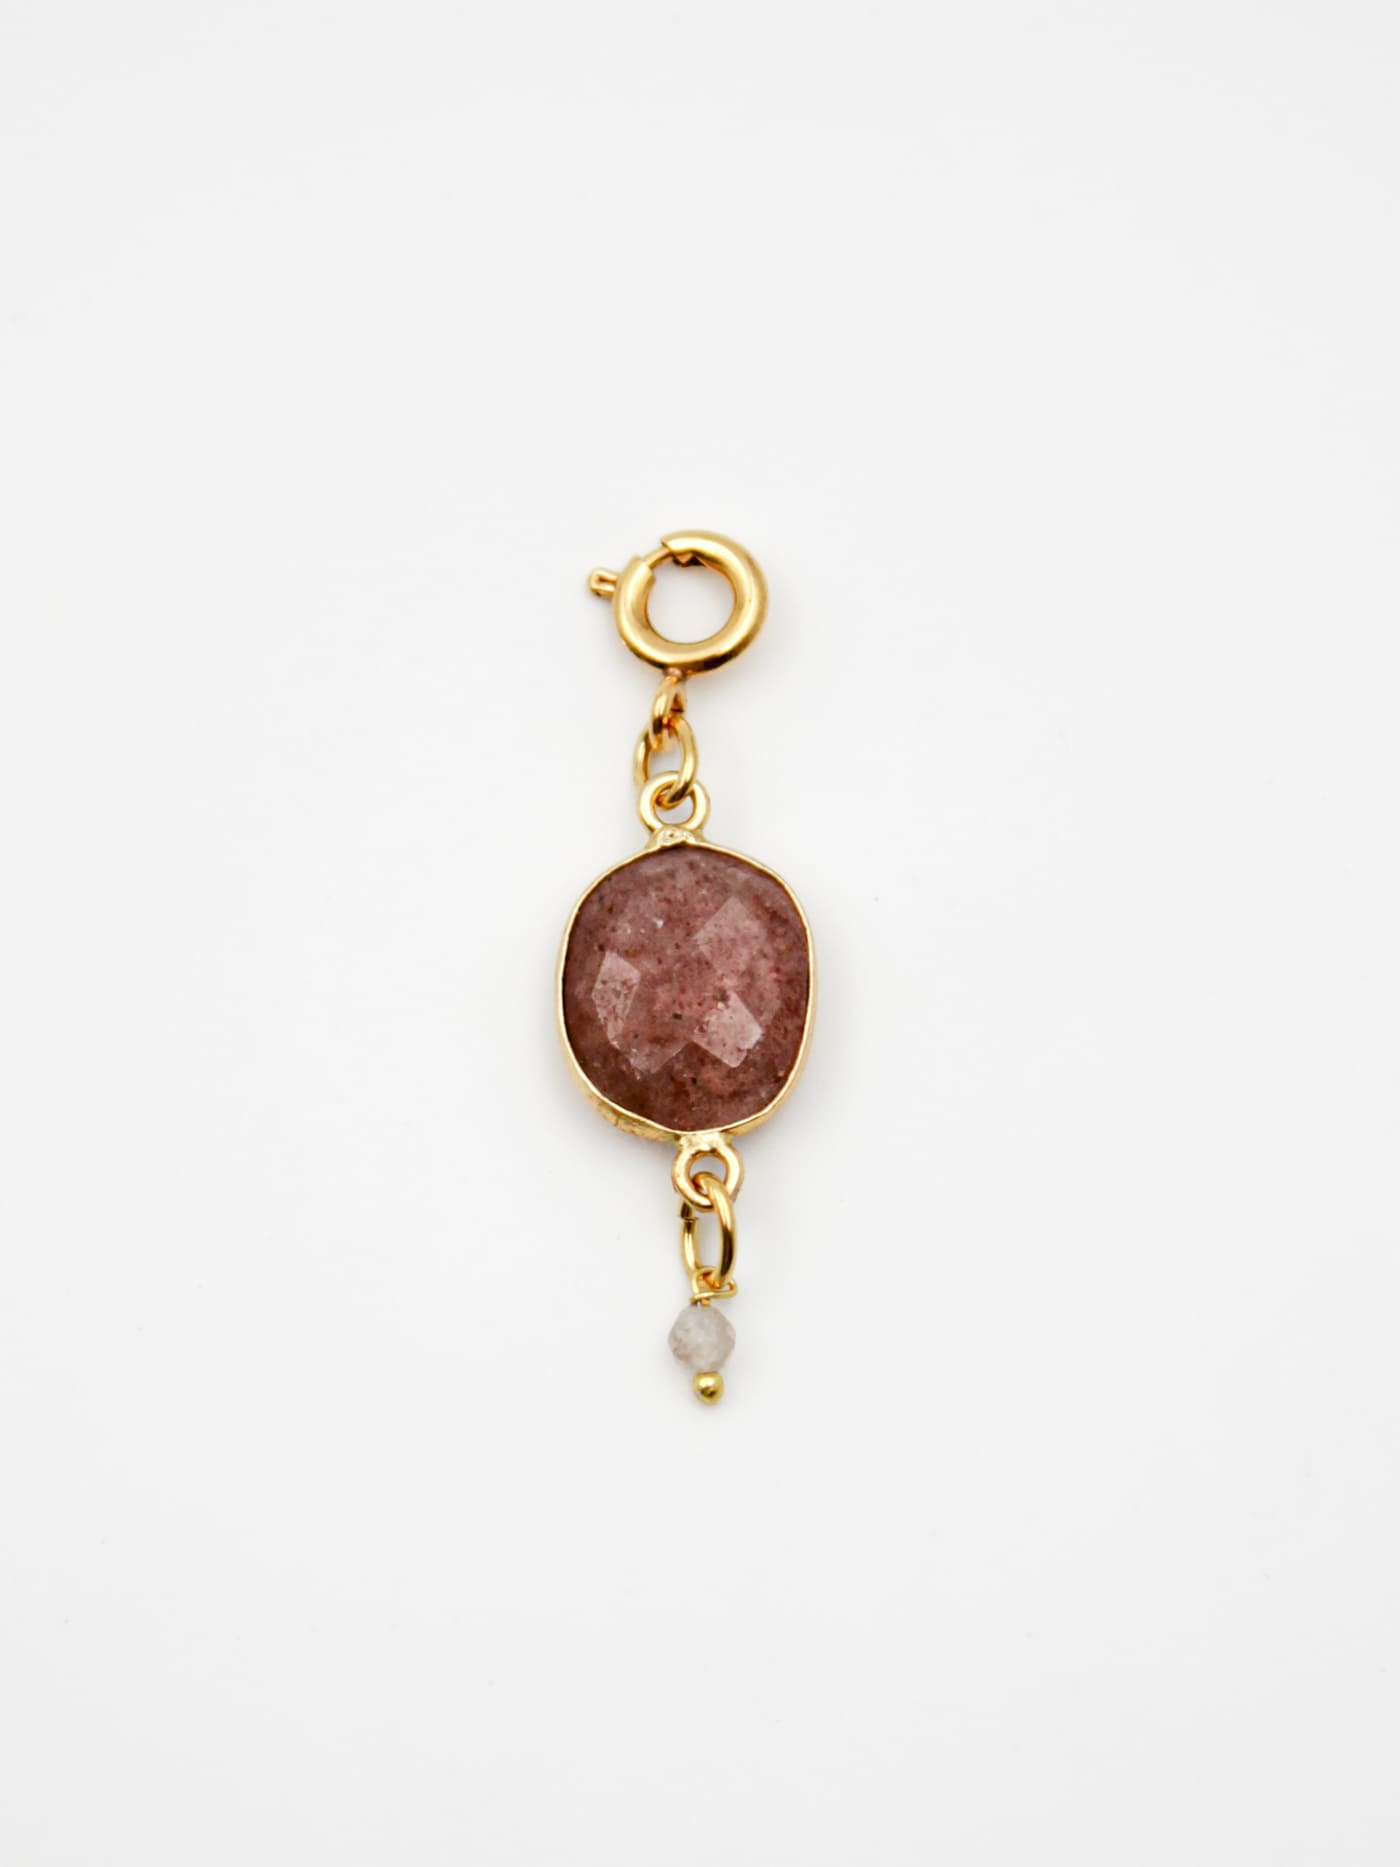 Bijoux dorés - Charm pierre en quartz fraise - Gamme GRIGRI - L'Atelier des Dames 